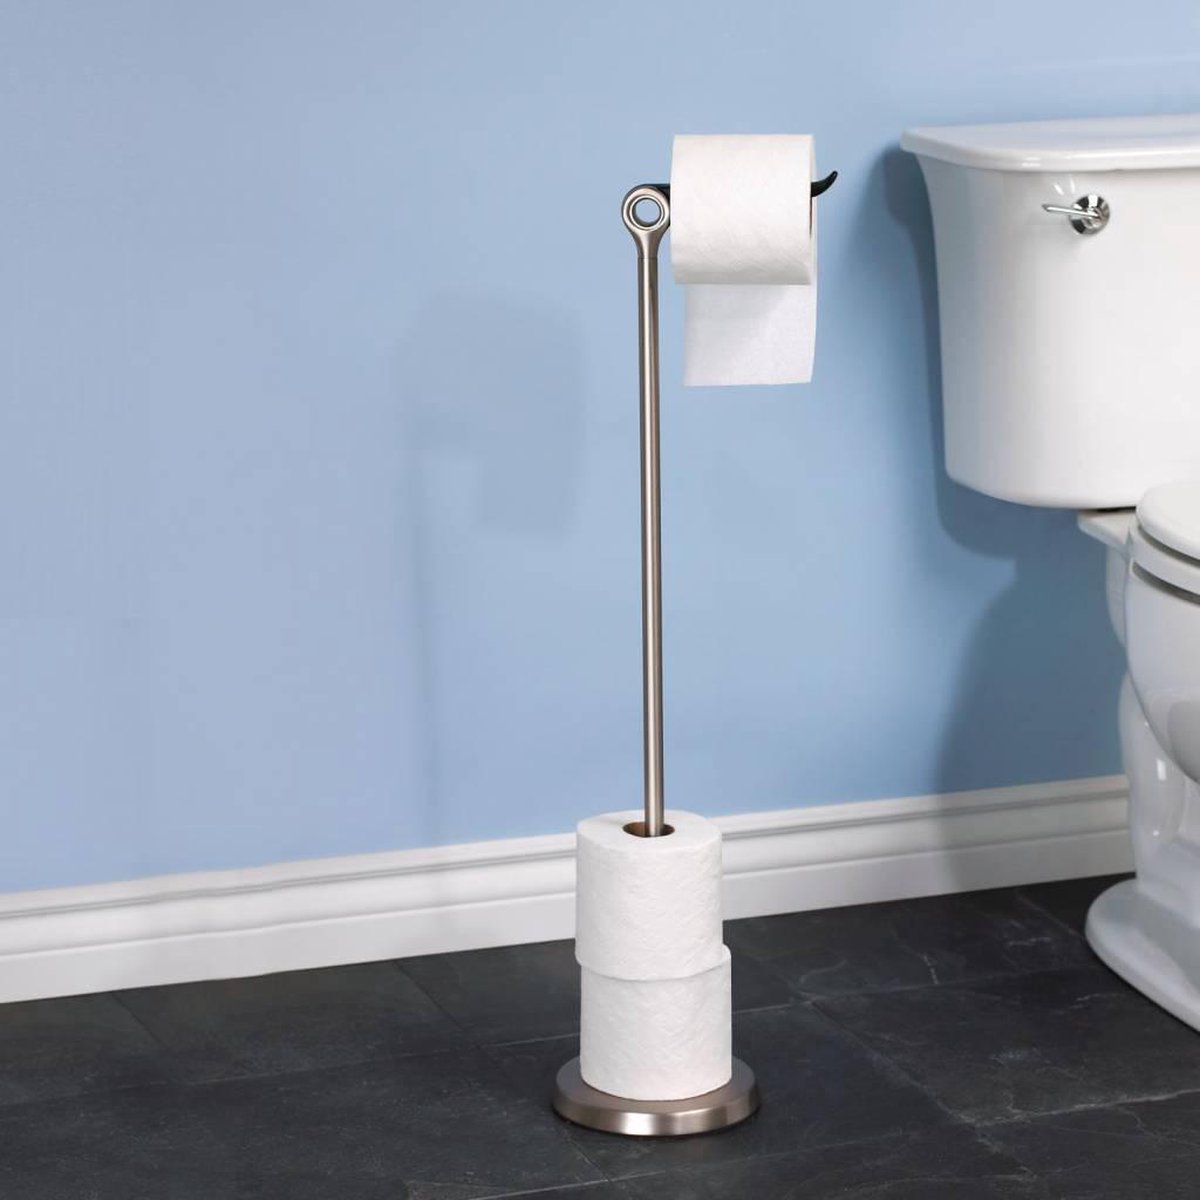 Umbra WC Rolhouder Toiletrolhouder - Tucan metaal - H 74 cm | bol.com